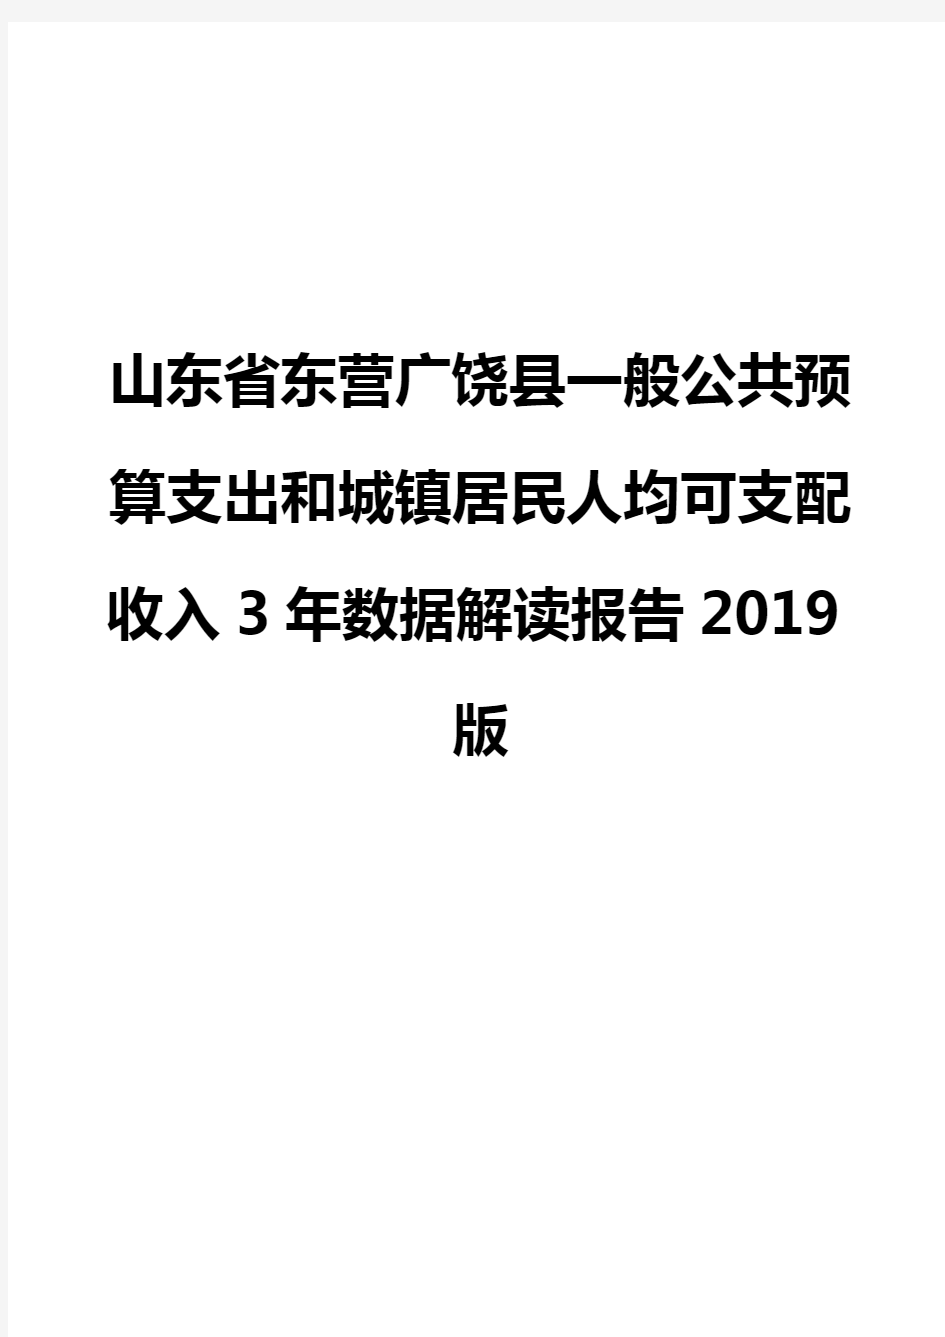 山东省东营广饶县一般公共预算支出和城镇居民人均可支配收入3年数据解读报告2019版